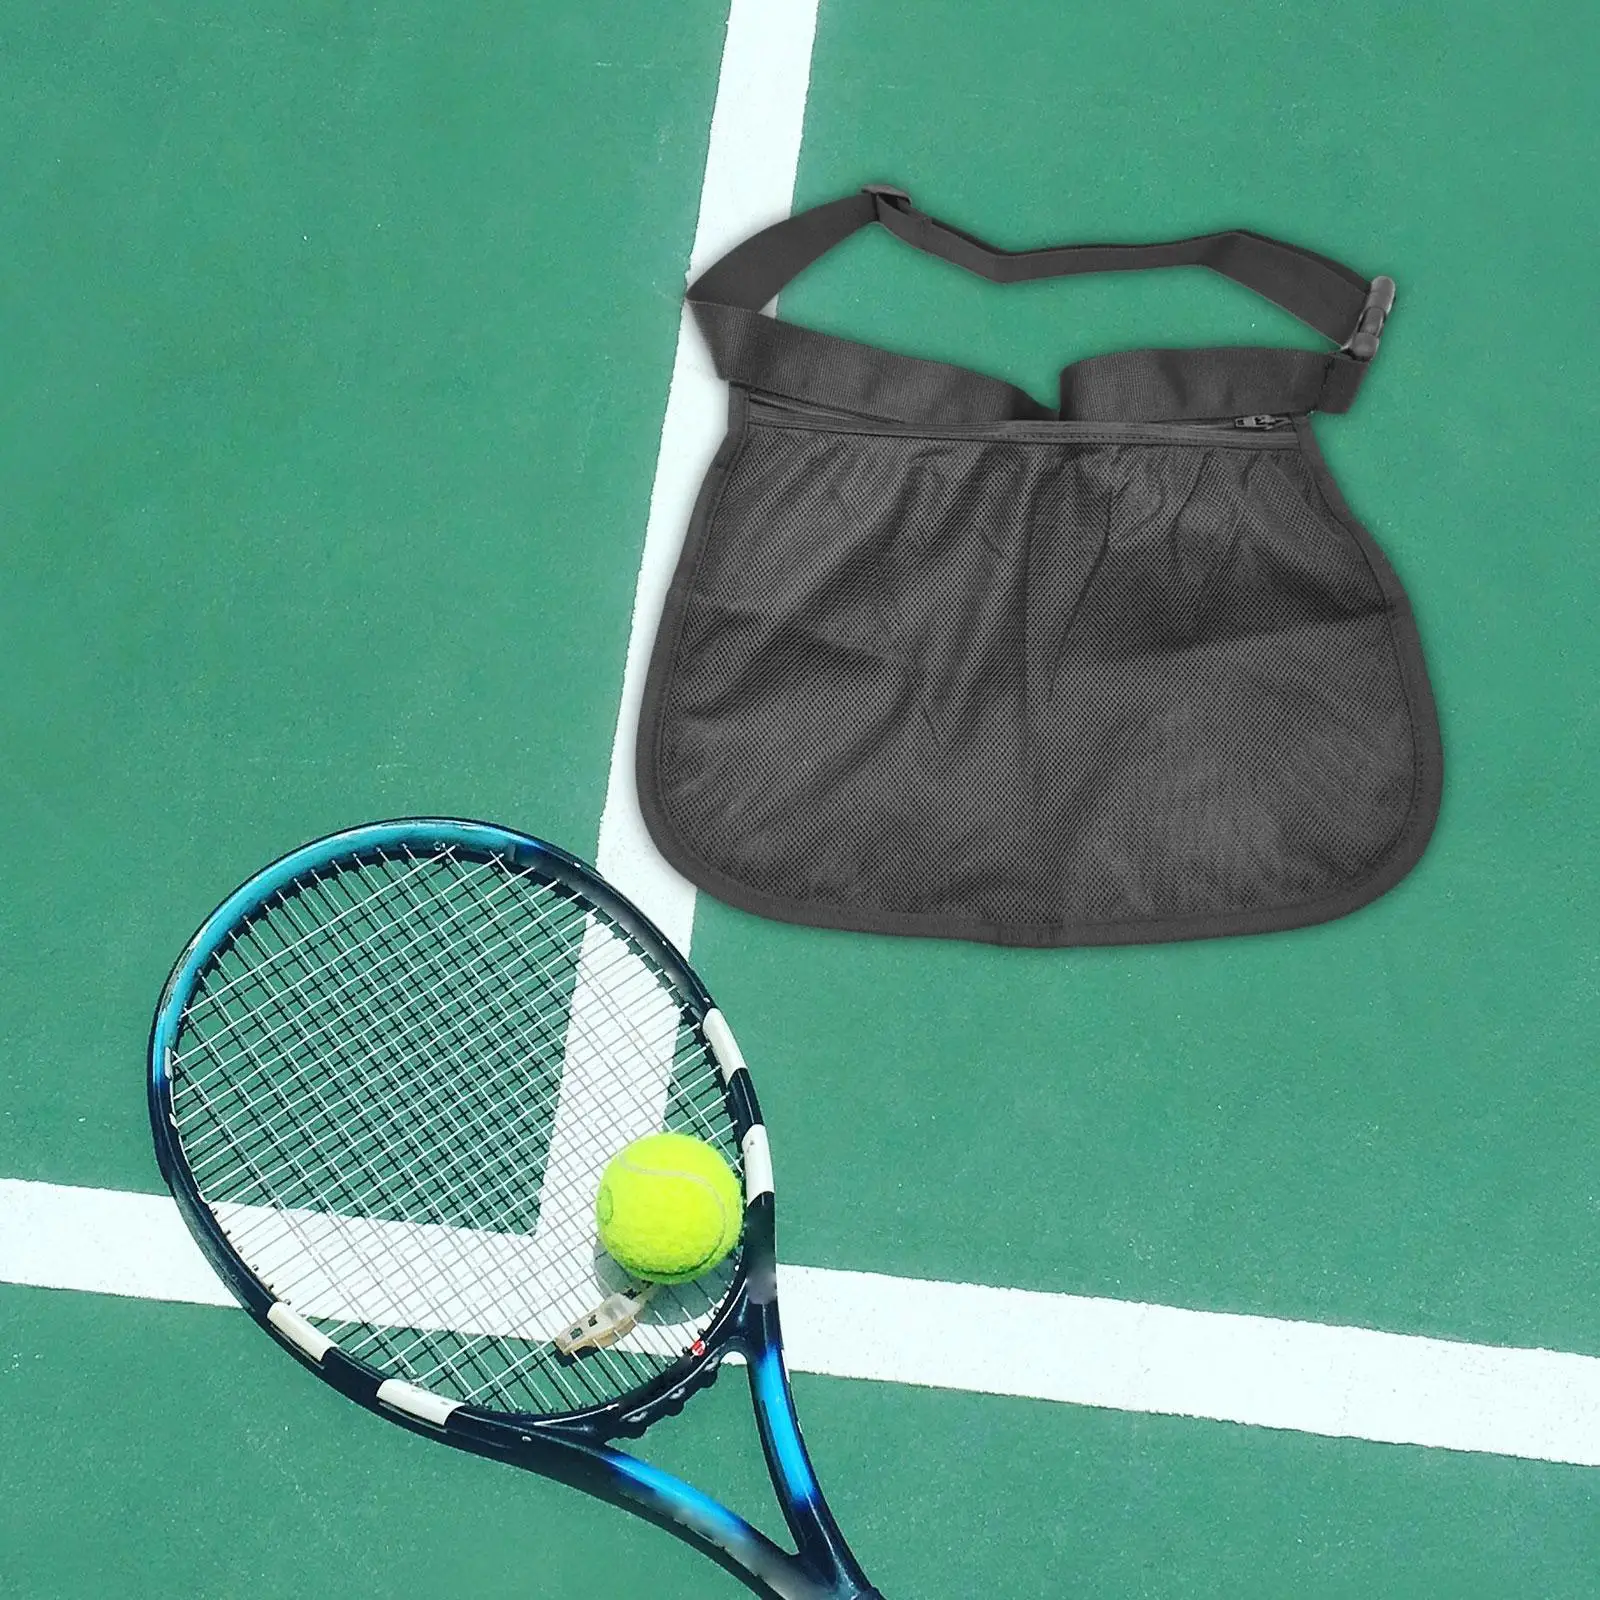 Tennis Ball Holder Table Tennis Ball Holder Bag Mesh Storage Bag for Fitness Exercise Workout Women Men Storing Balls and Phones